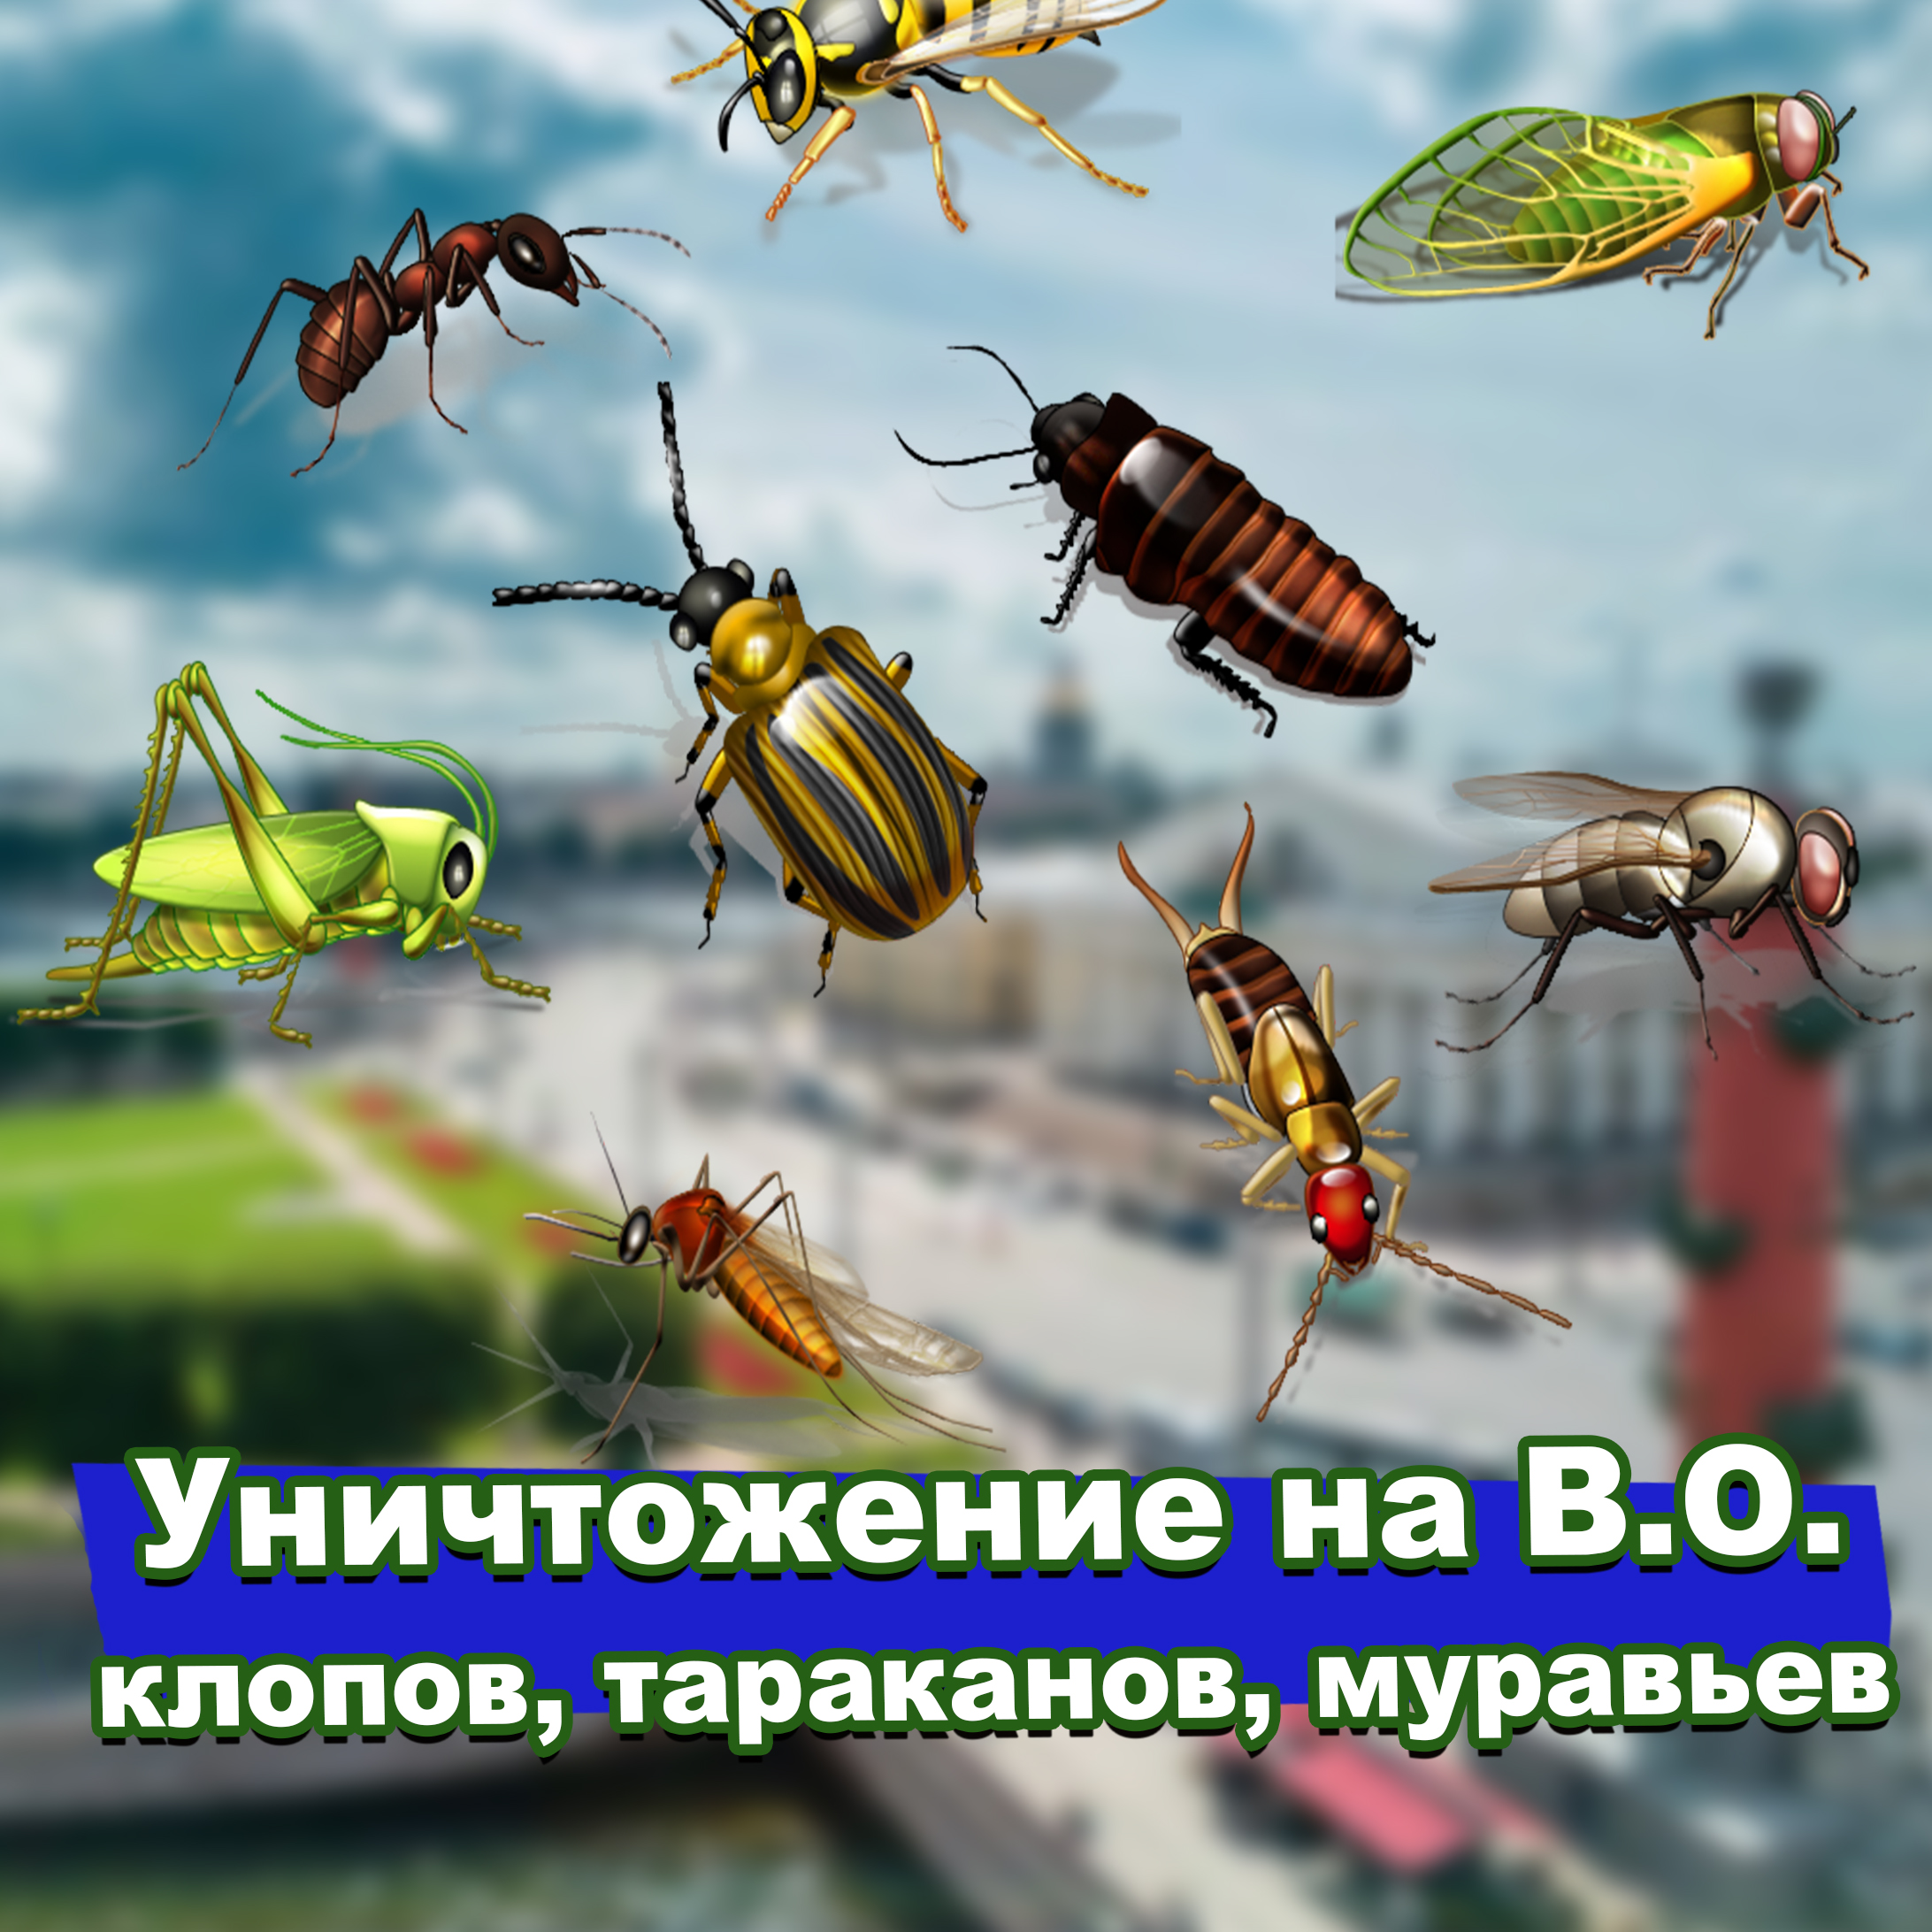 уничтожение клопов тараканов муравьев на Васильевском острове